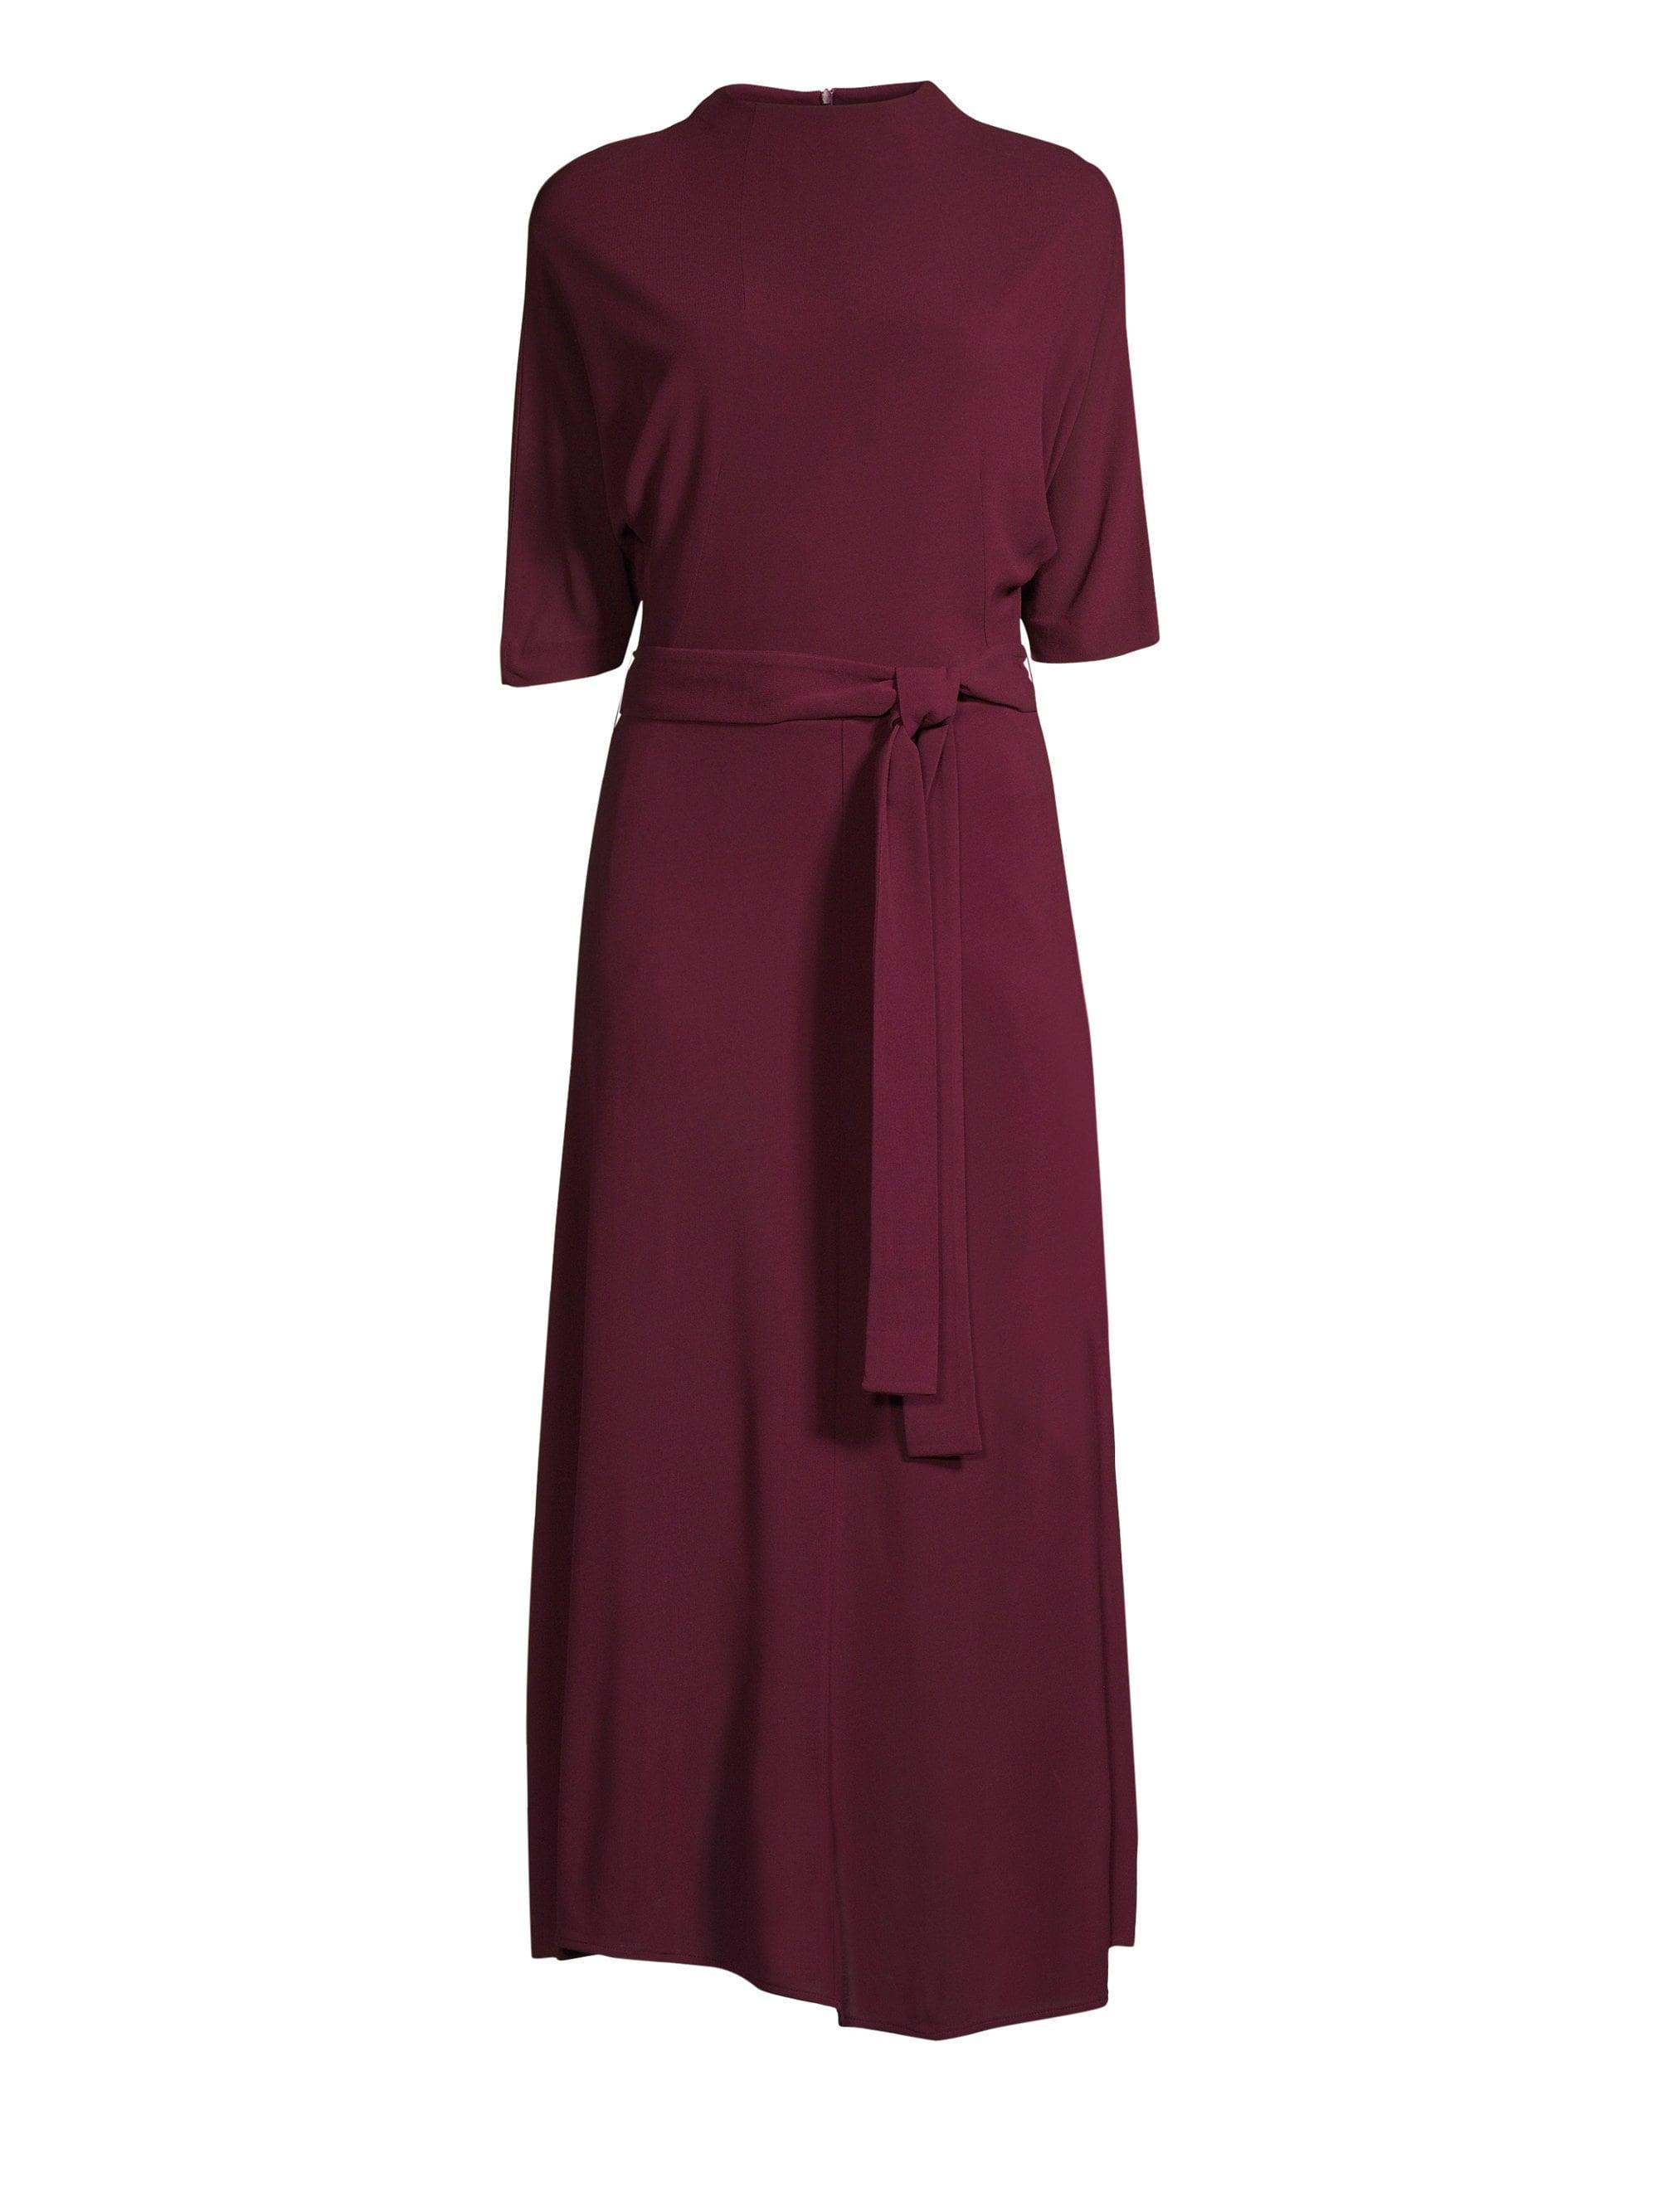 BOSS by HUGO BOSS Eodora Jersey Crepe Belted Mock Neck Dress in Dark Berry  (Purple) - Lyst